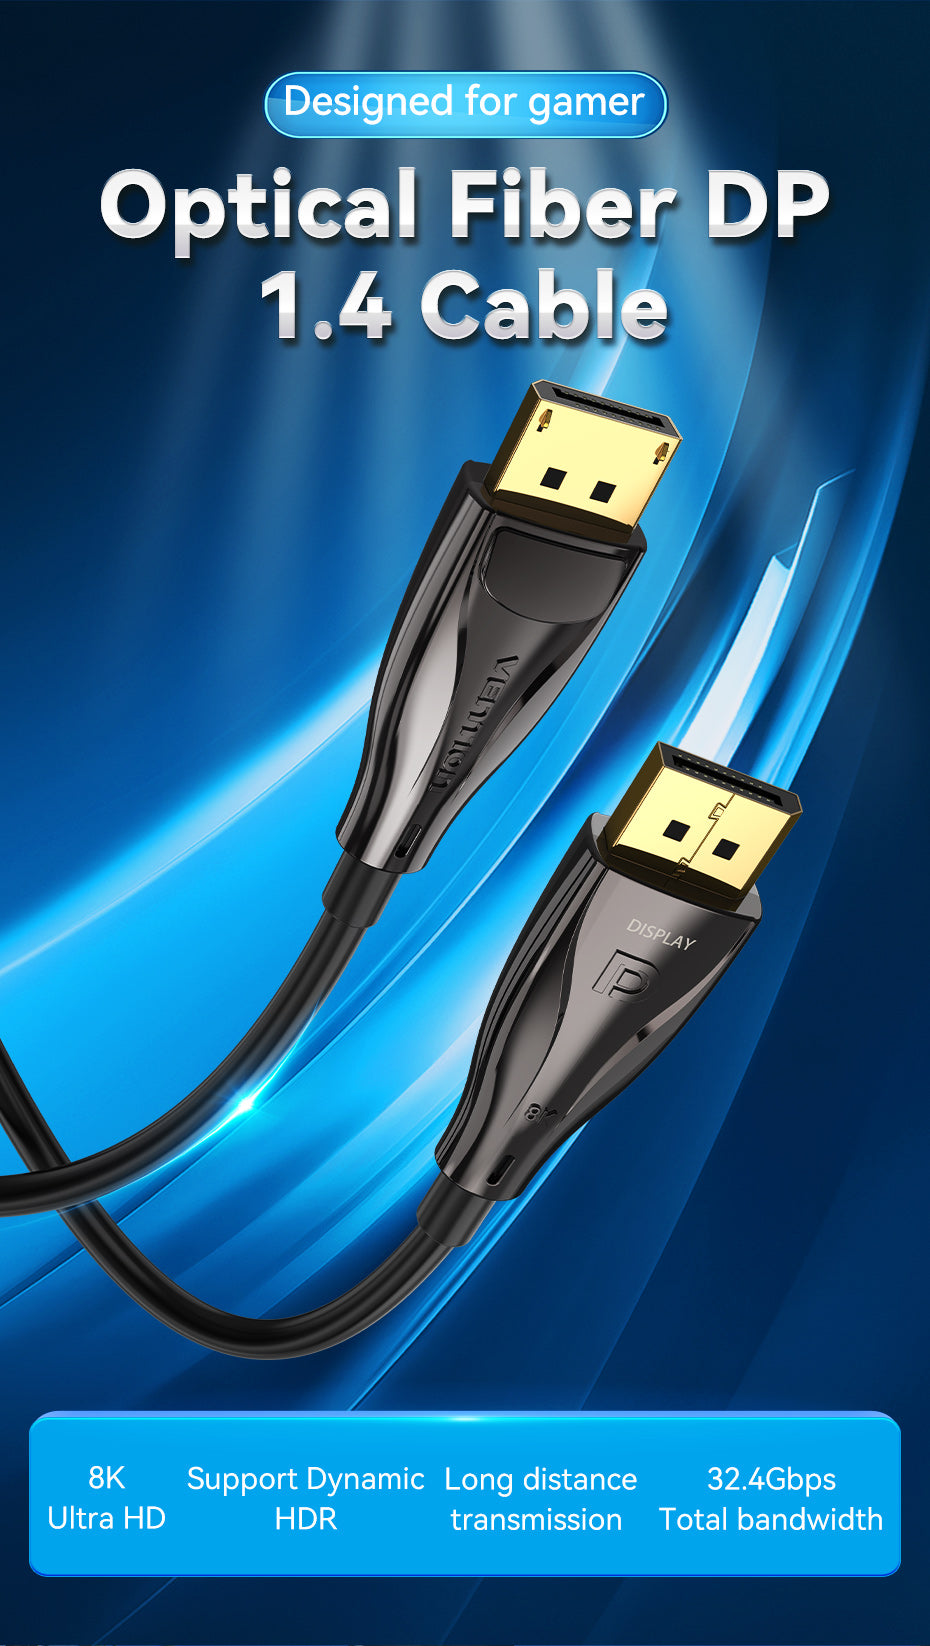 Câble HDMI-A Mâle vers Mâle 4K HD 1.5/2/5M Noir